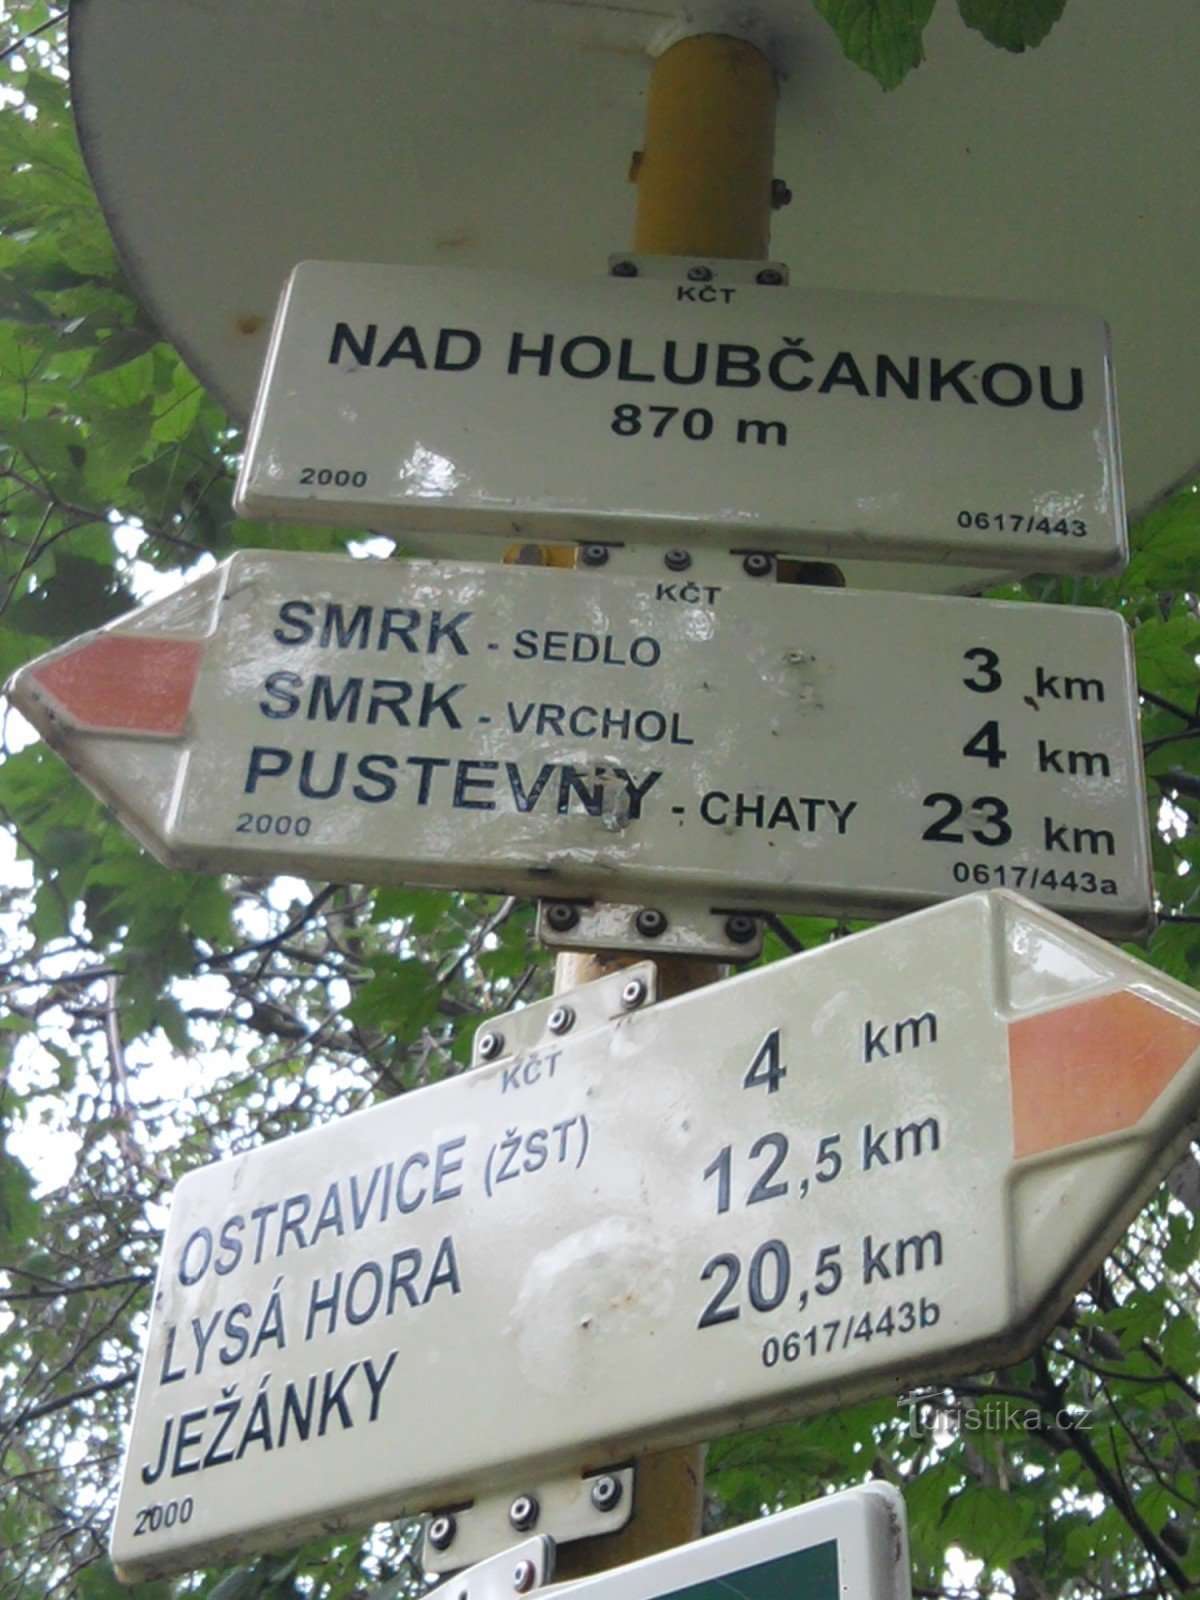 Smrk方面への最初の停留所 - Nad Holubčankou